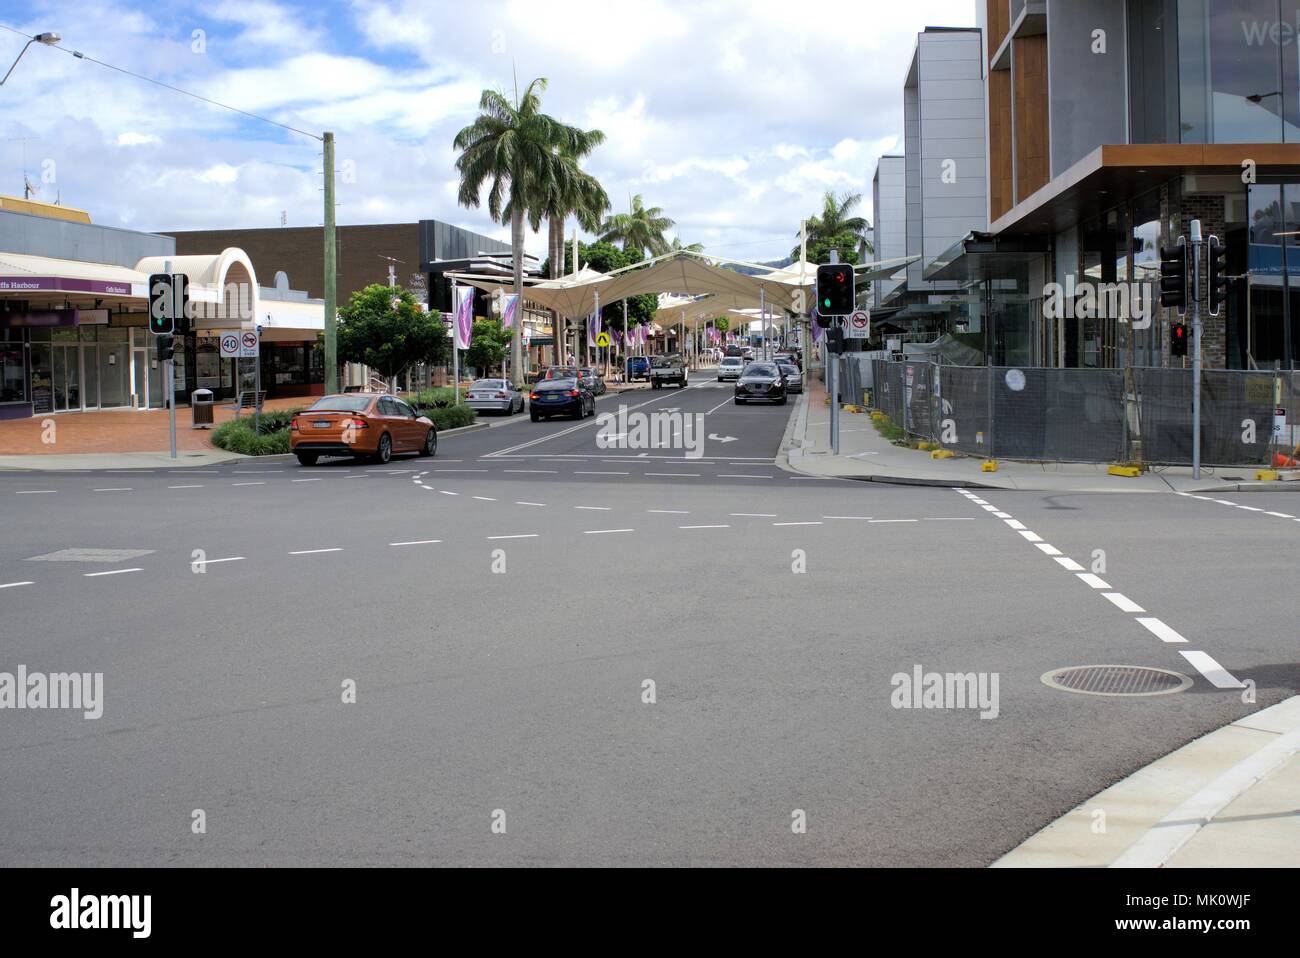 Central Business District, Coffs Harbour, Australien. Verkehr auf der Straße. Bild hat Autos, Fahrzeuge, Geschäften, Büros, Gebäuden, Wanderweg, Bäume Stockfoto